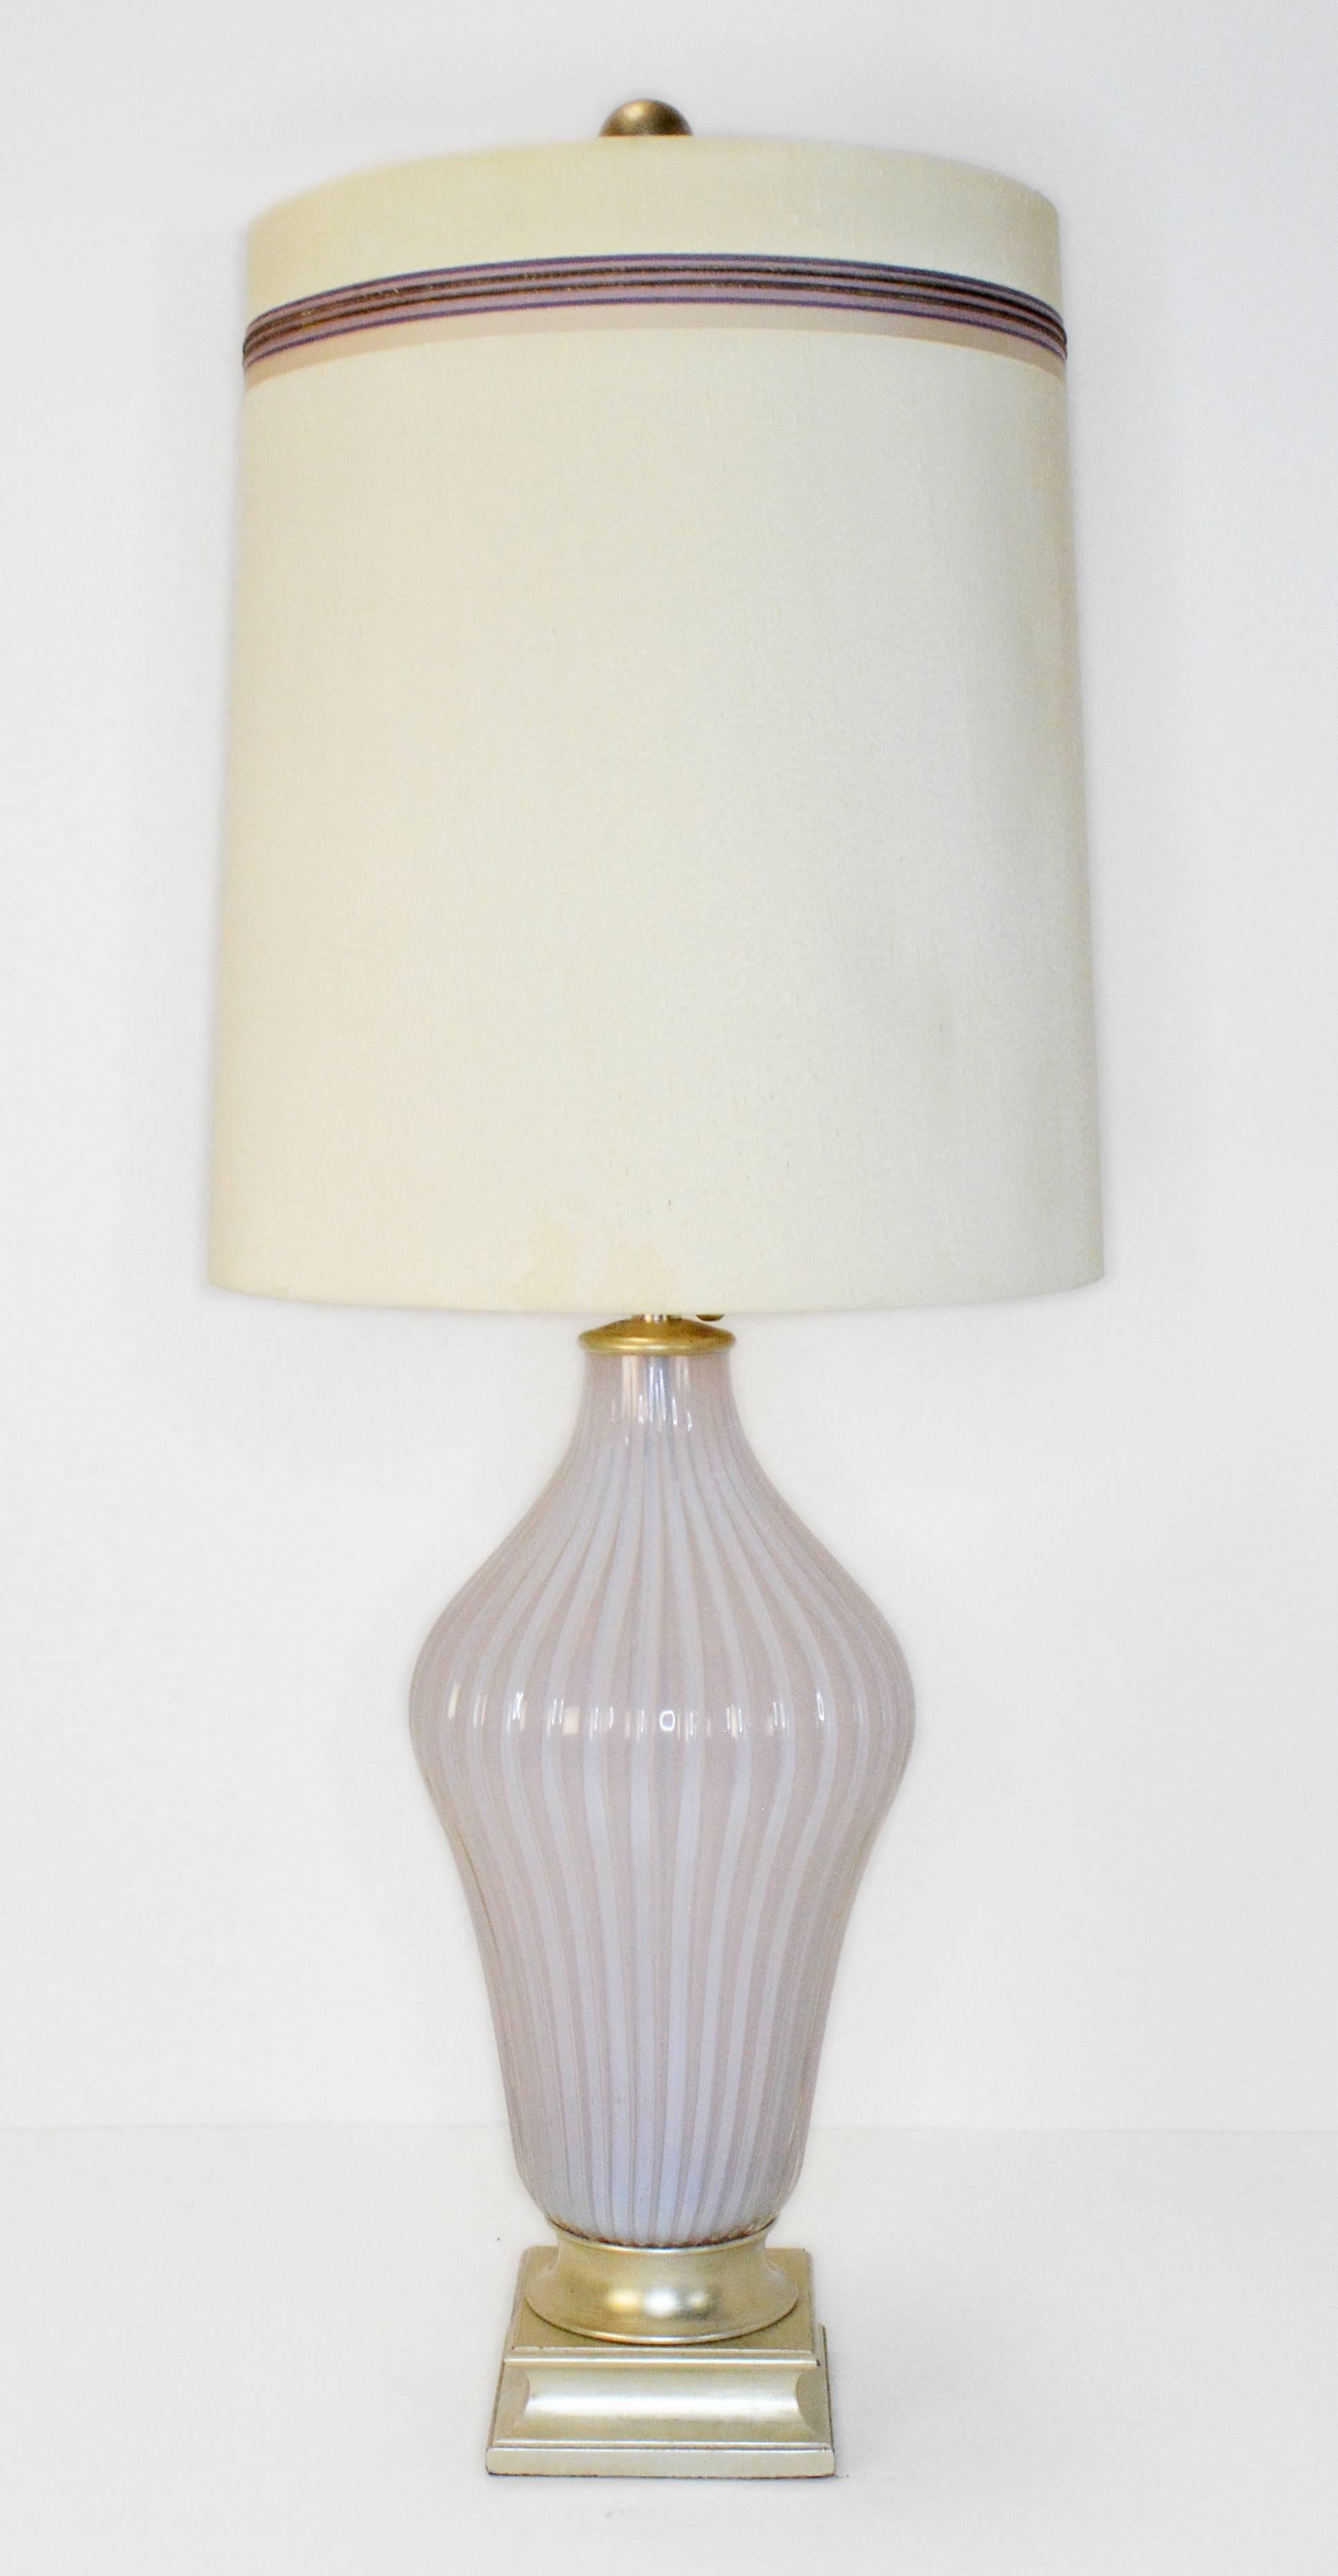 Une paire rare de lampes de table vintage de Murano par Seguso pour Marbro. Lampes en verre opalin de Murano côtelées d'un rose pâle, vendues par The Marbro Lamp Company sur des bases originales en feuilles d'argent. La douce lueur du verre opalin